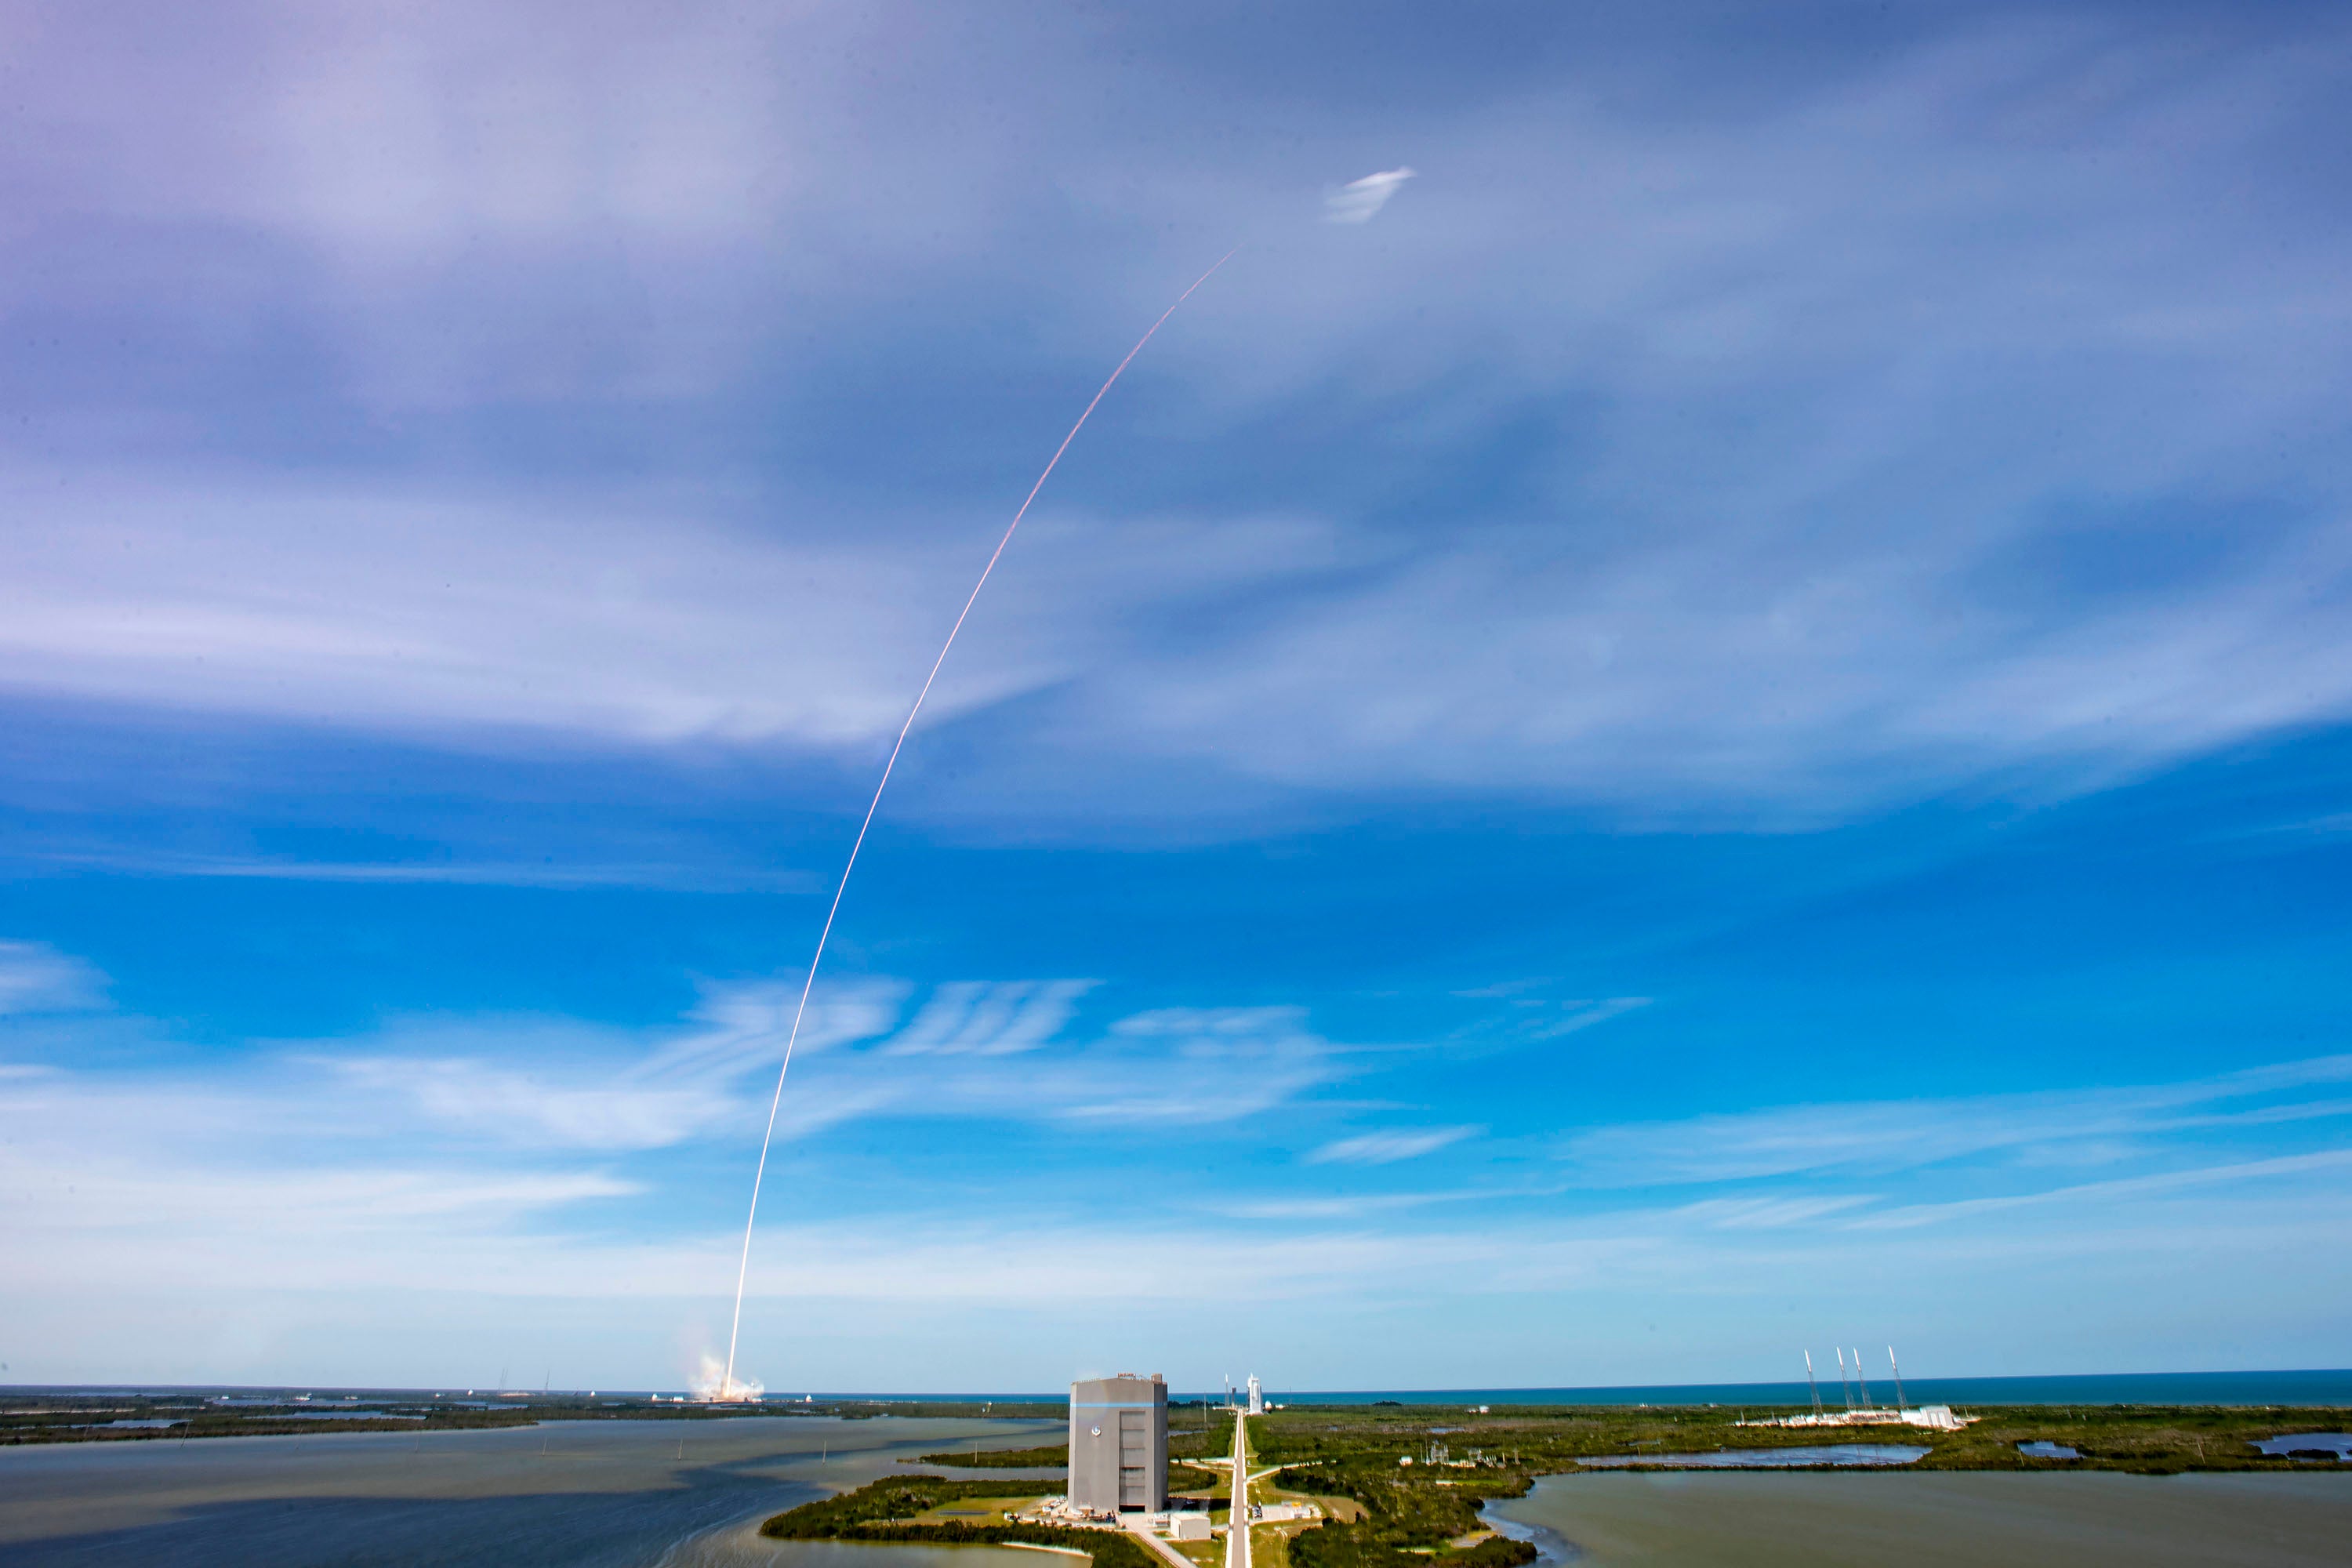 Rocket launch against a blue sky